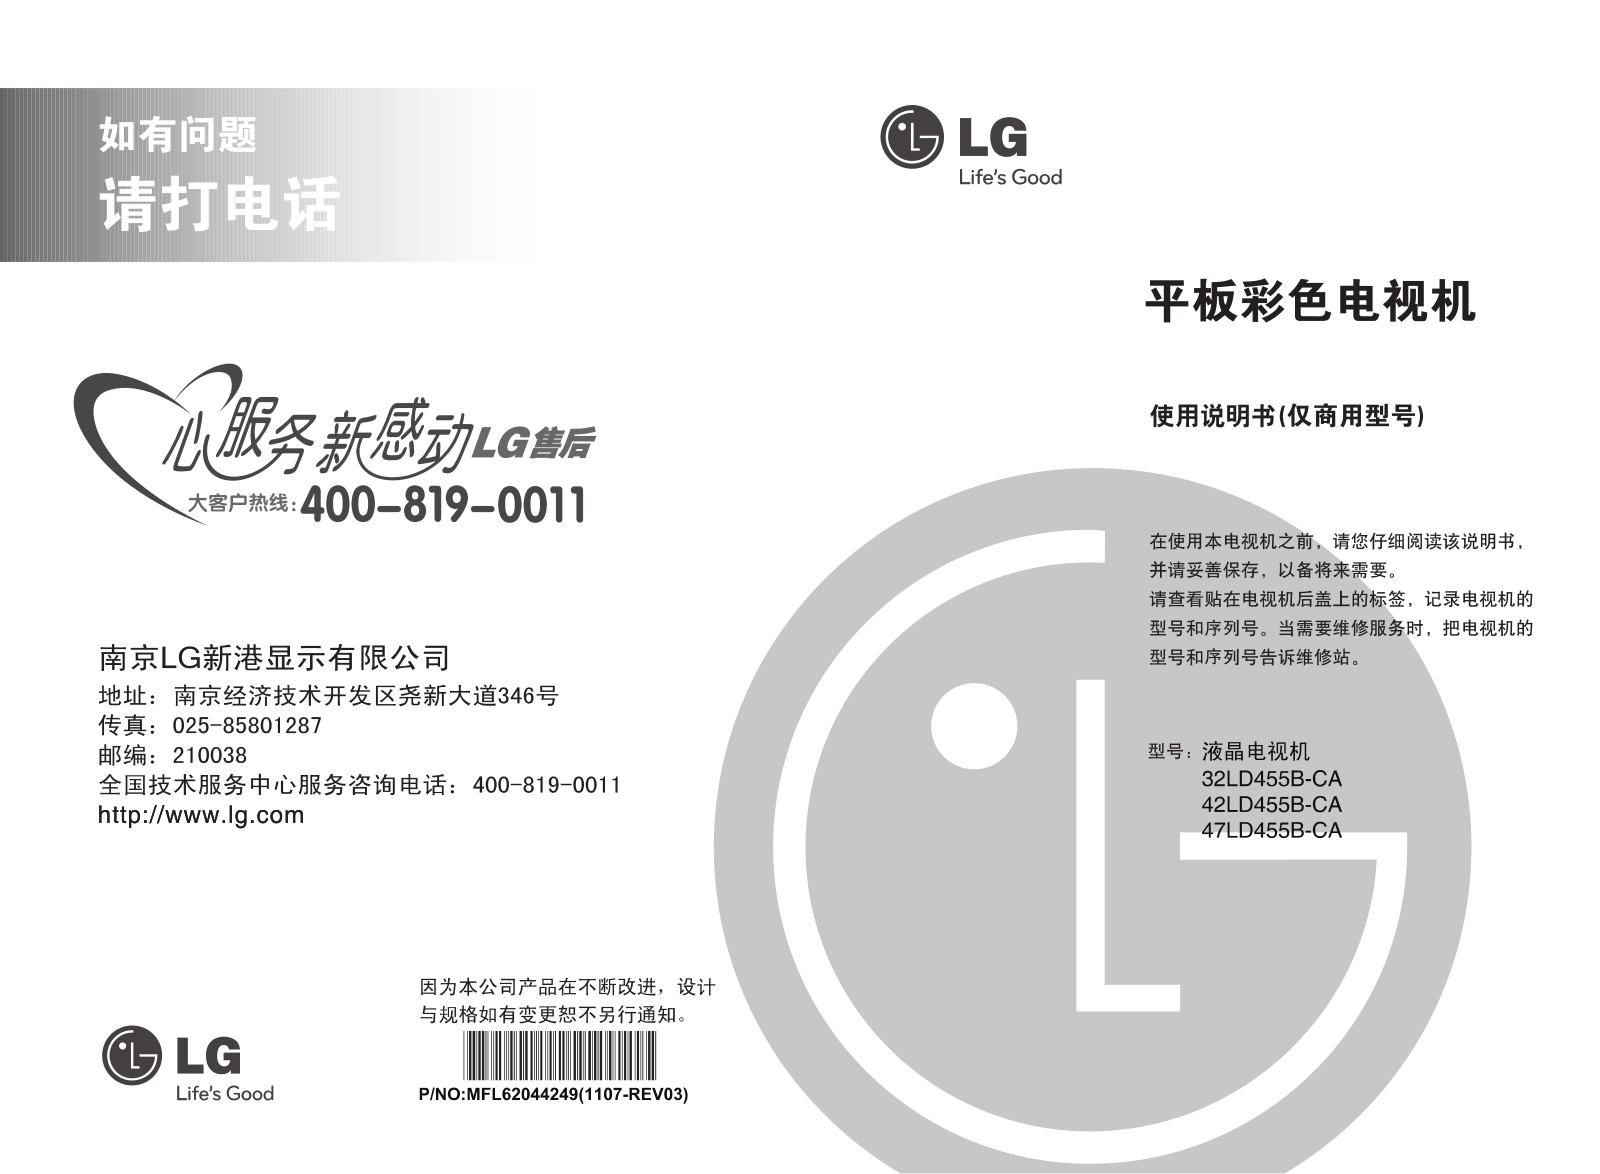 LG 32LD455B, 42LD455B Product Manual